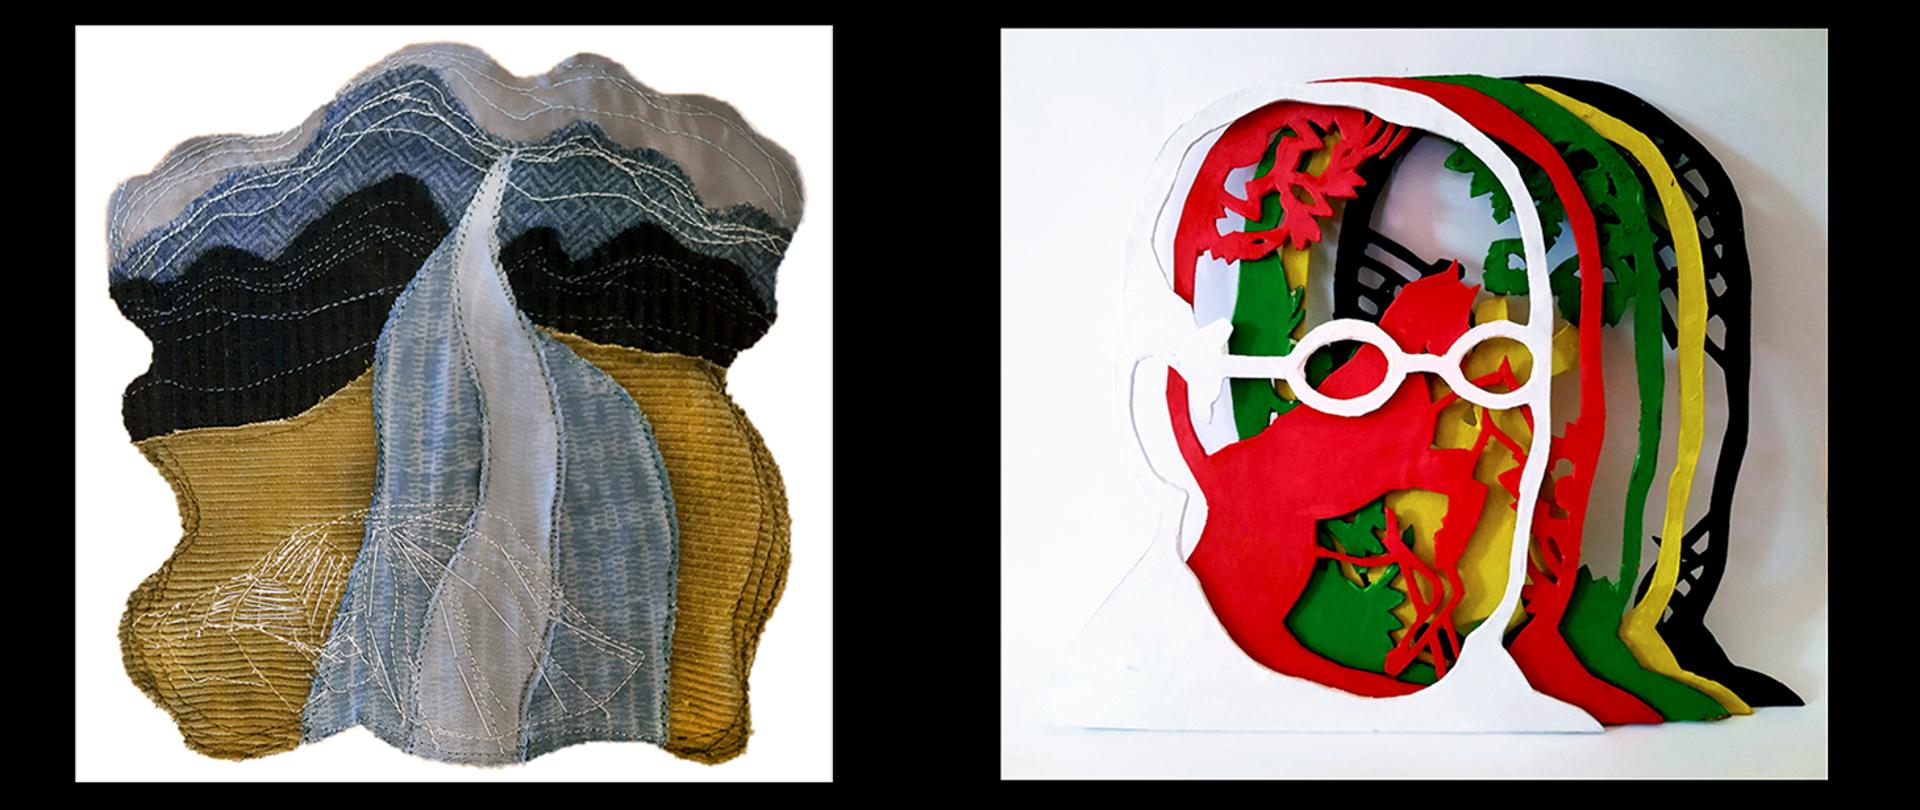 Widoczne 2 obrazy: po lewej tkanina artystyczna przedstawiająca pejzaż, po prawej sylwetowo ujęty schemat twarzy w 5 warstwach.